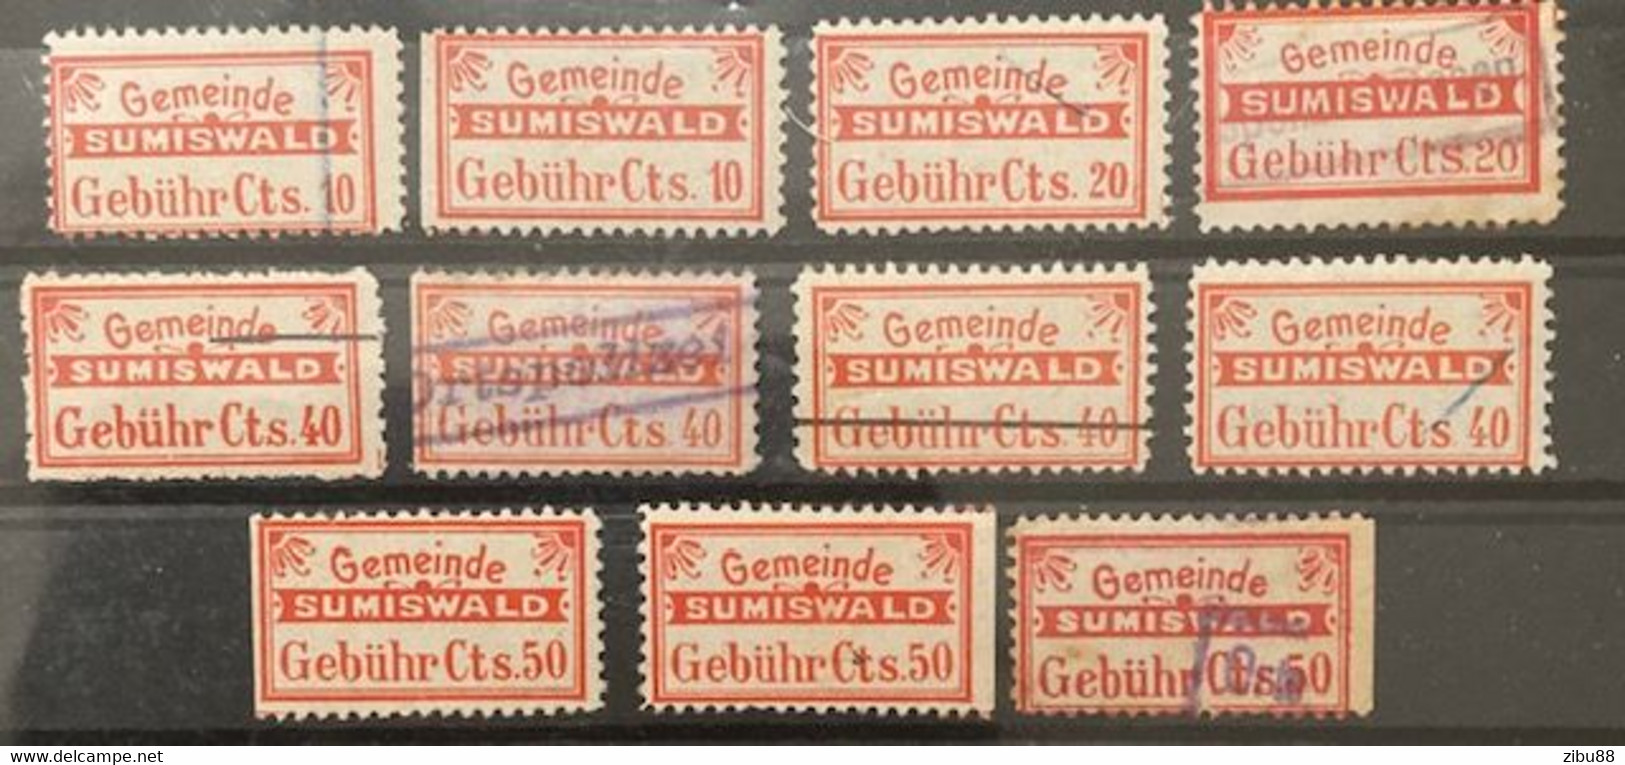 Fiskalmarken / Revenue Stamp Switzerland - Gemeinde Sumiswald BE - Steuermarken